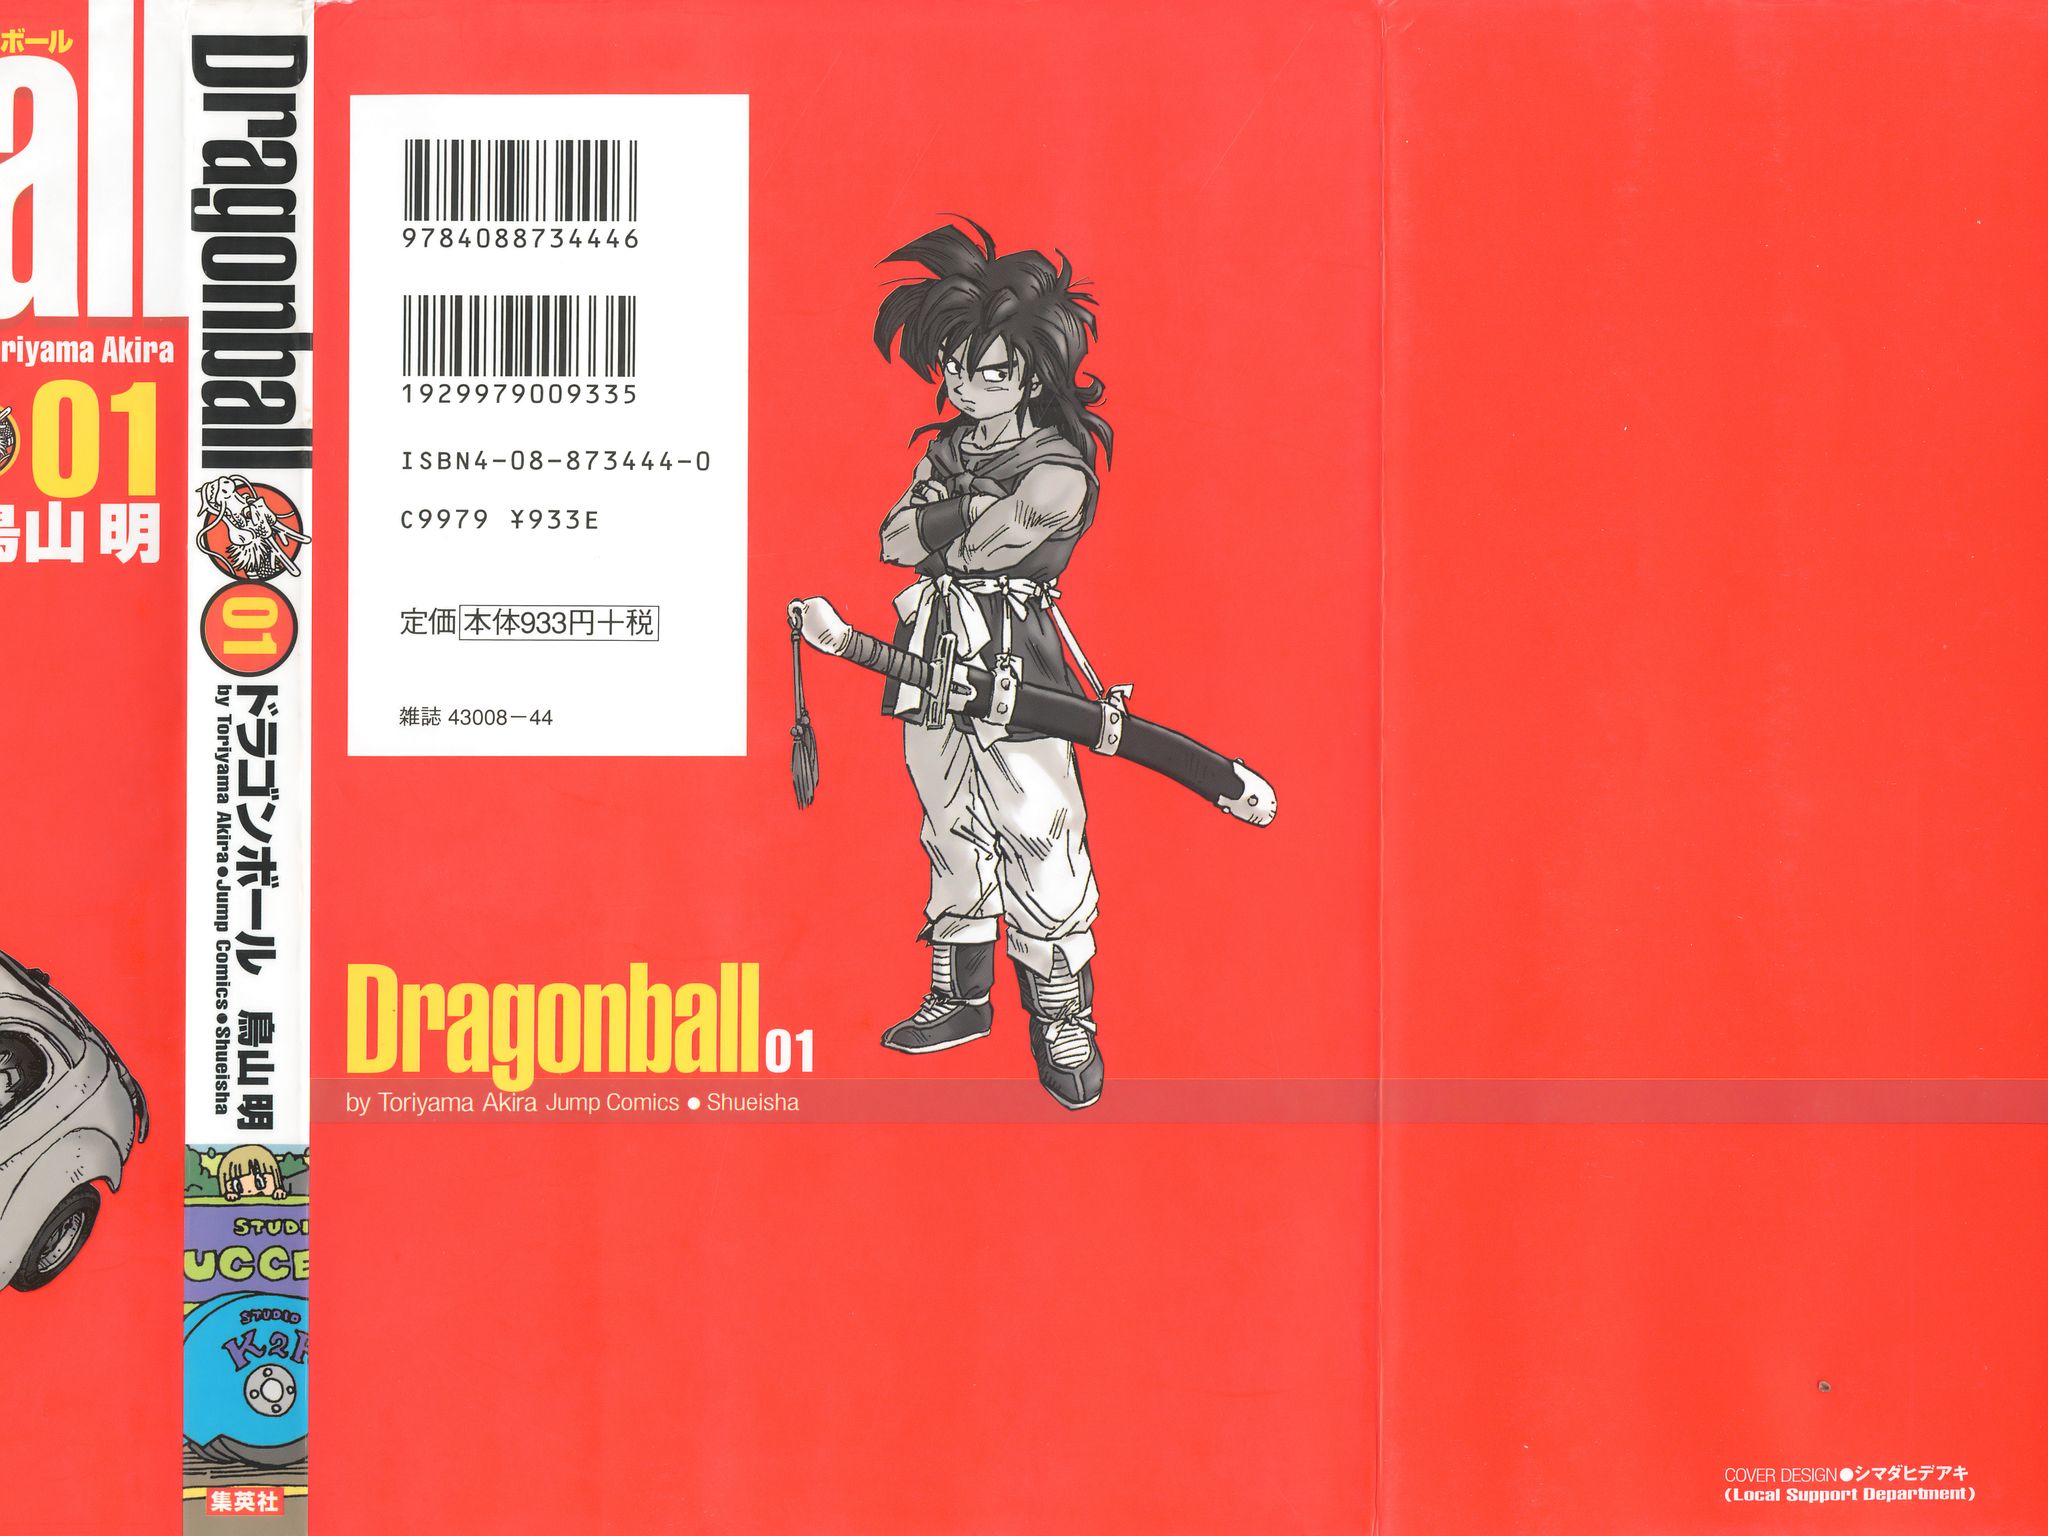 DragonBall01_002.jpg